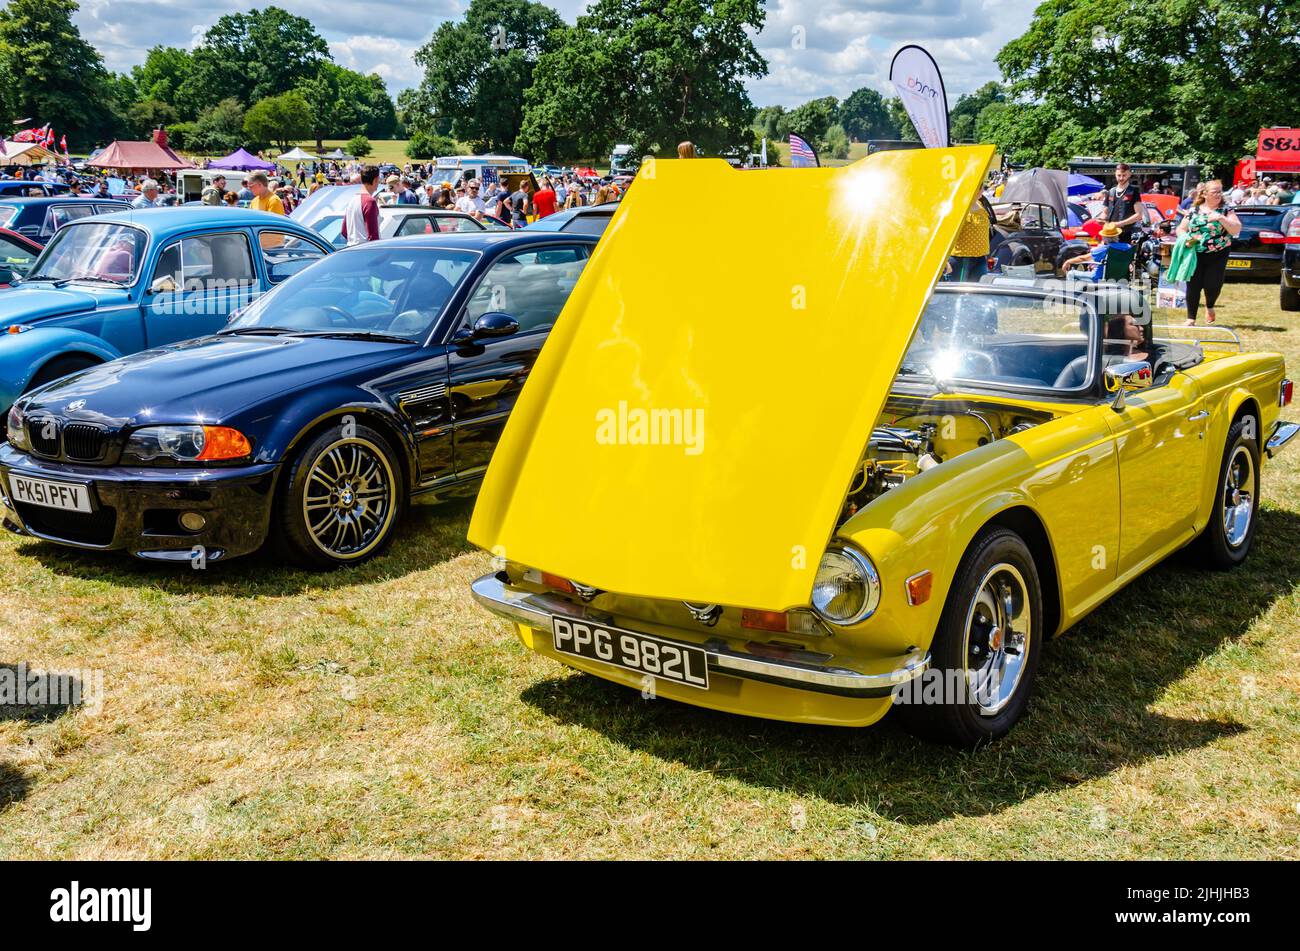 Il Berkshire Motor Show, un evento gratuito al Prospect Park di Reading, nel Regno Unito, che espone auto nuove e vecchie. Foto Stock